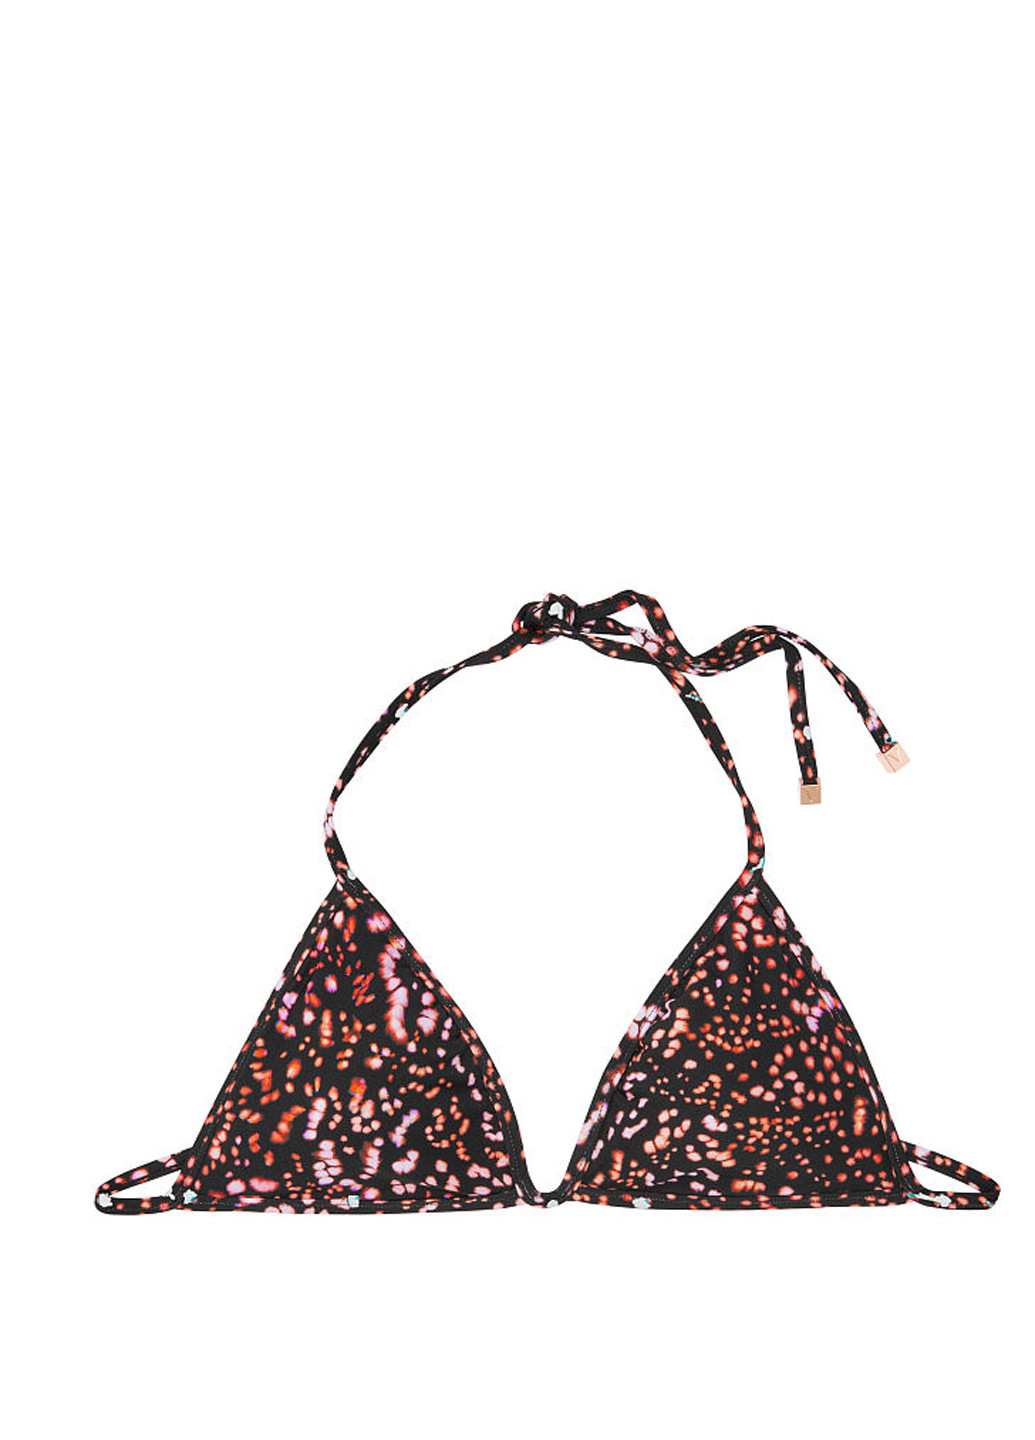 Черный летний купальник 2-сторонний (лиф, трусы) бикини, раздельный Victoria's Secret